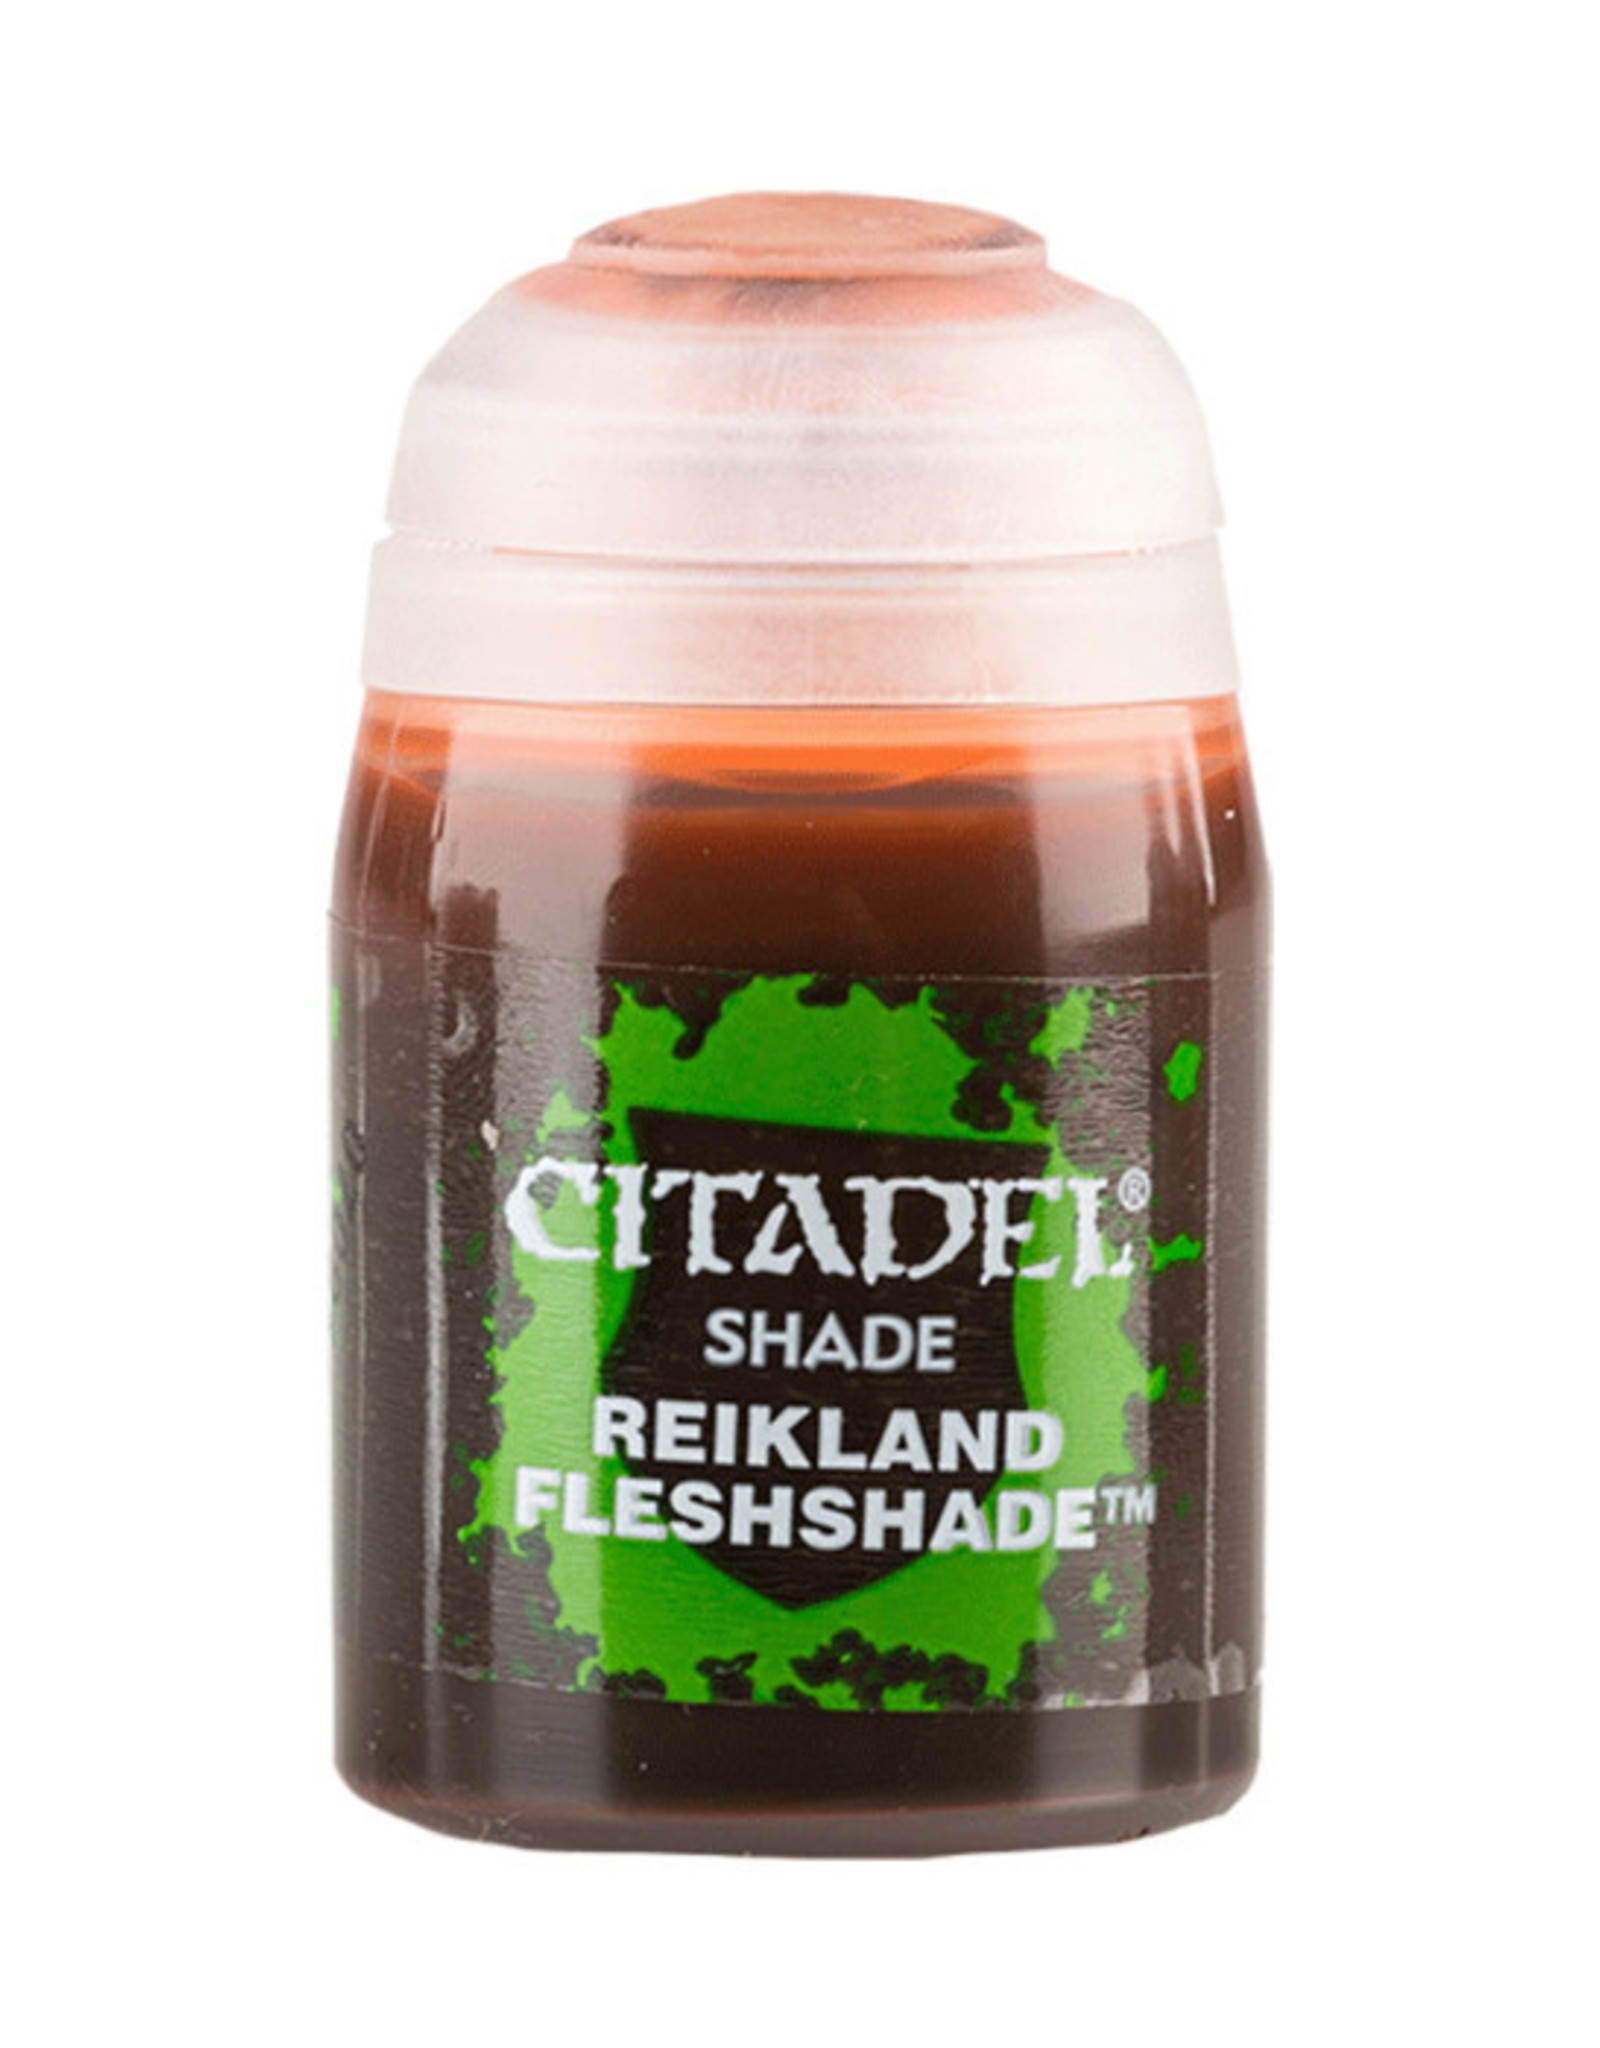 Citadel Citadel Colour: Shade - Reikland Fleshshade